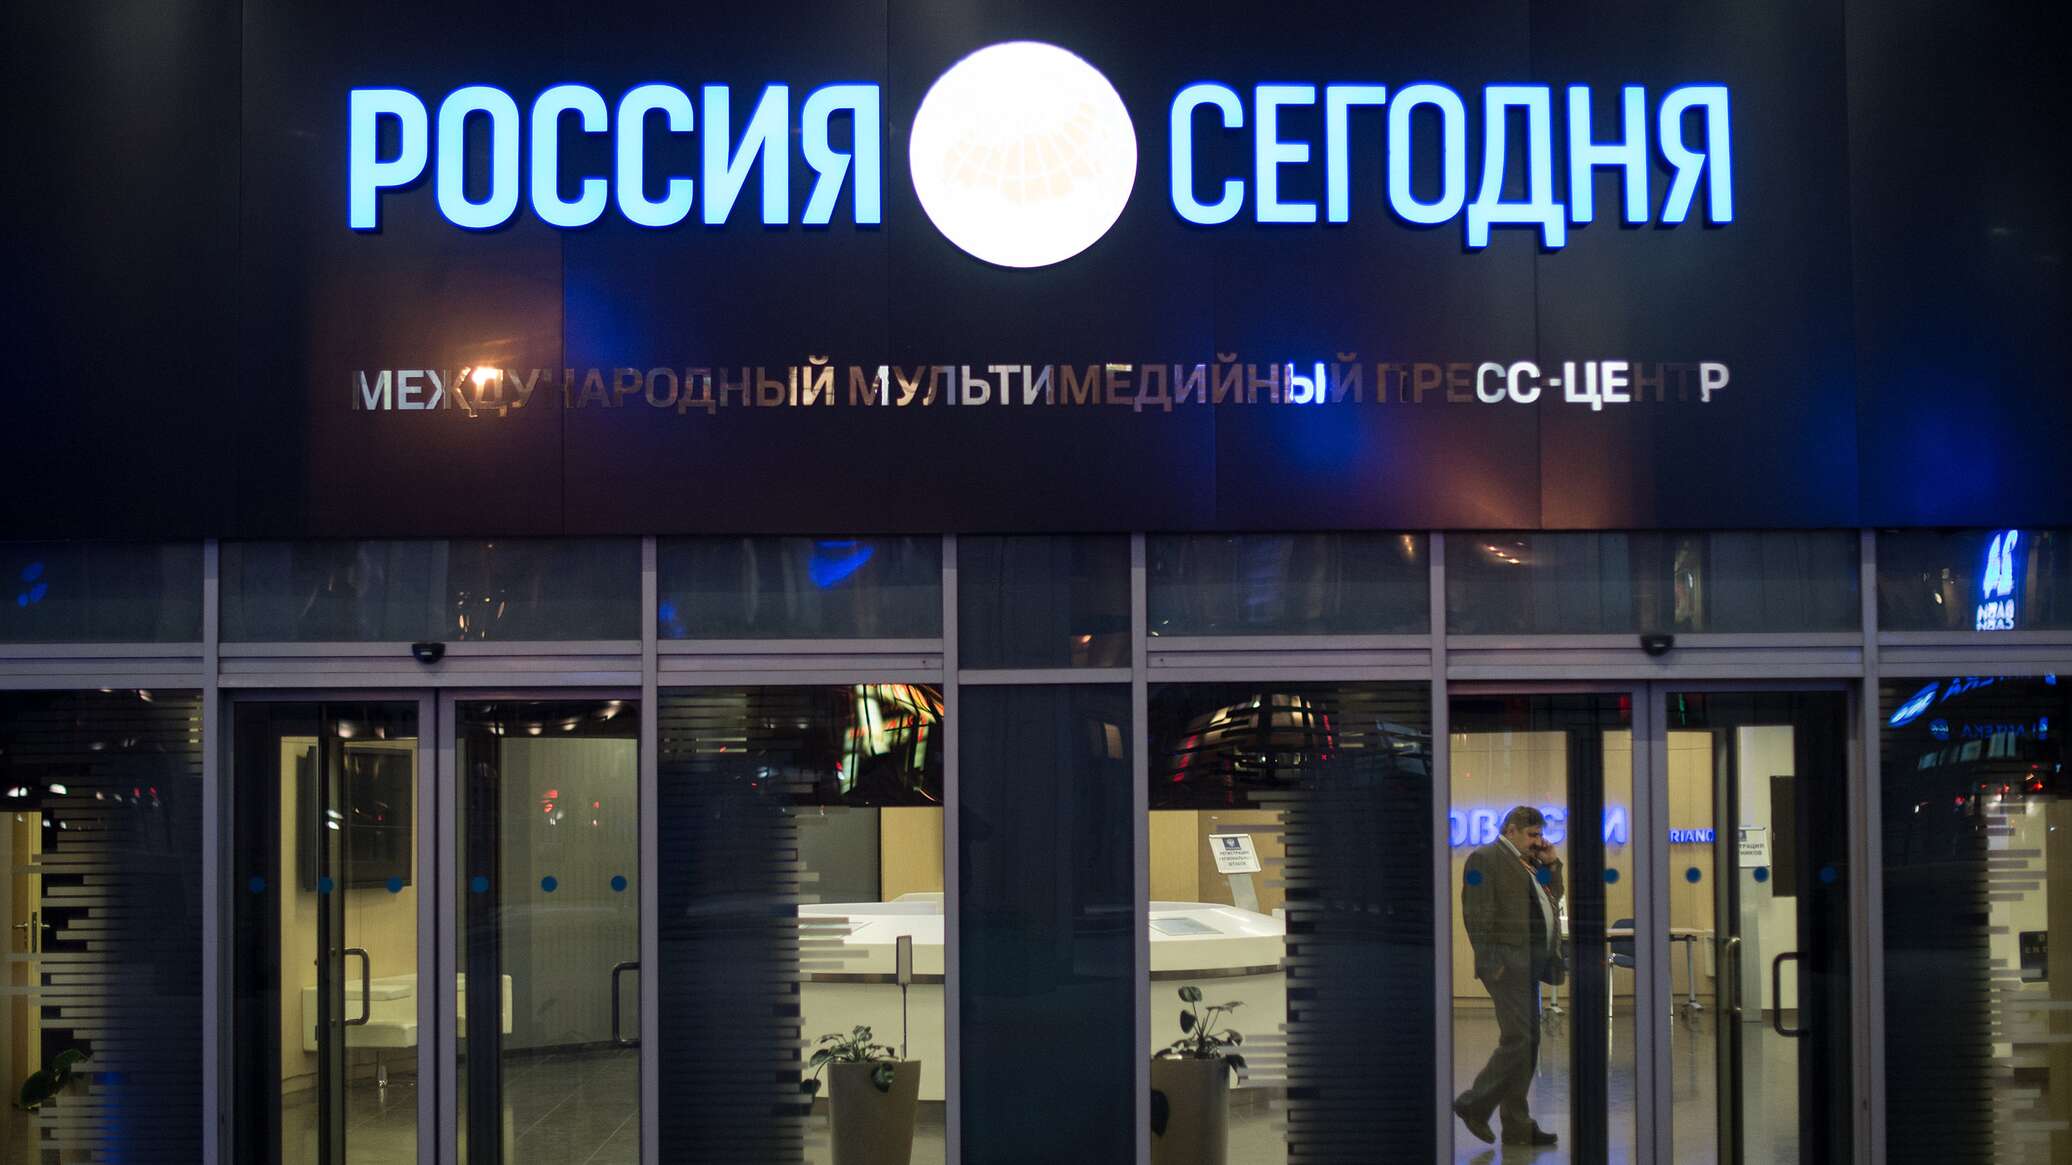 بوتين يهنئ المجموعة الإعلامية الدولية الأم لوكالة "سبوتنيك" "روسيا سيغودنيا" بعيدها العاشر